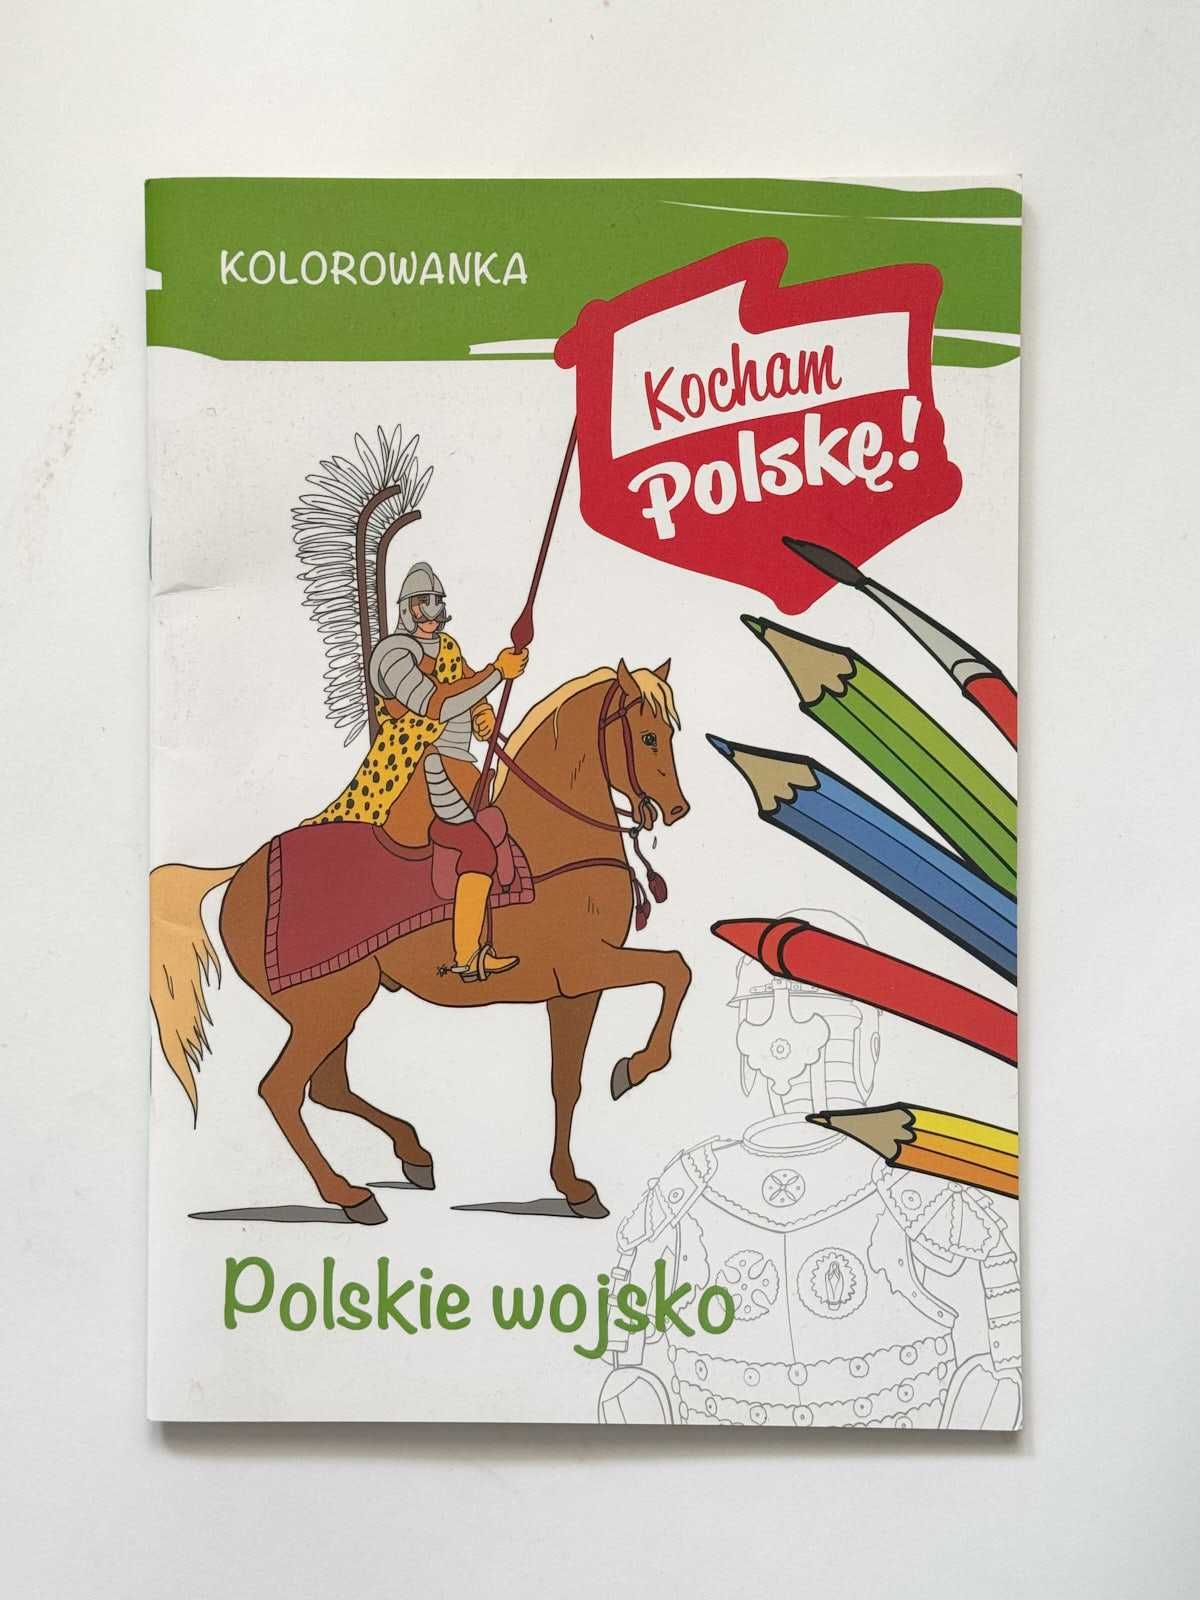 Kolorowanka Kocham Polskę! Polskie wojsko